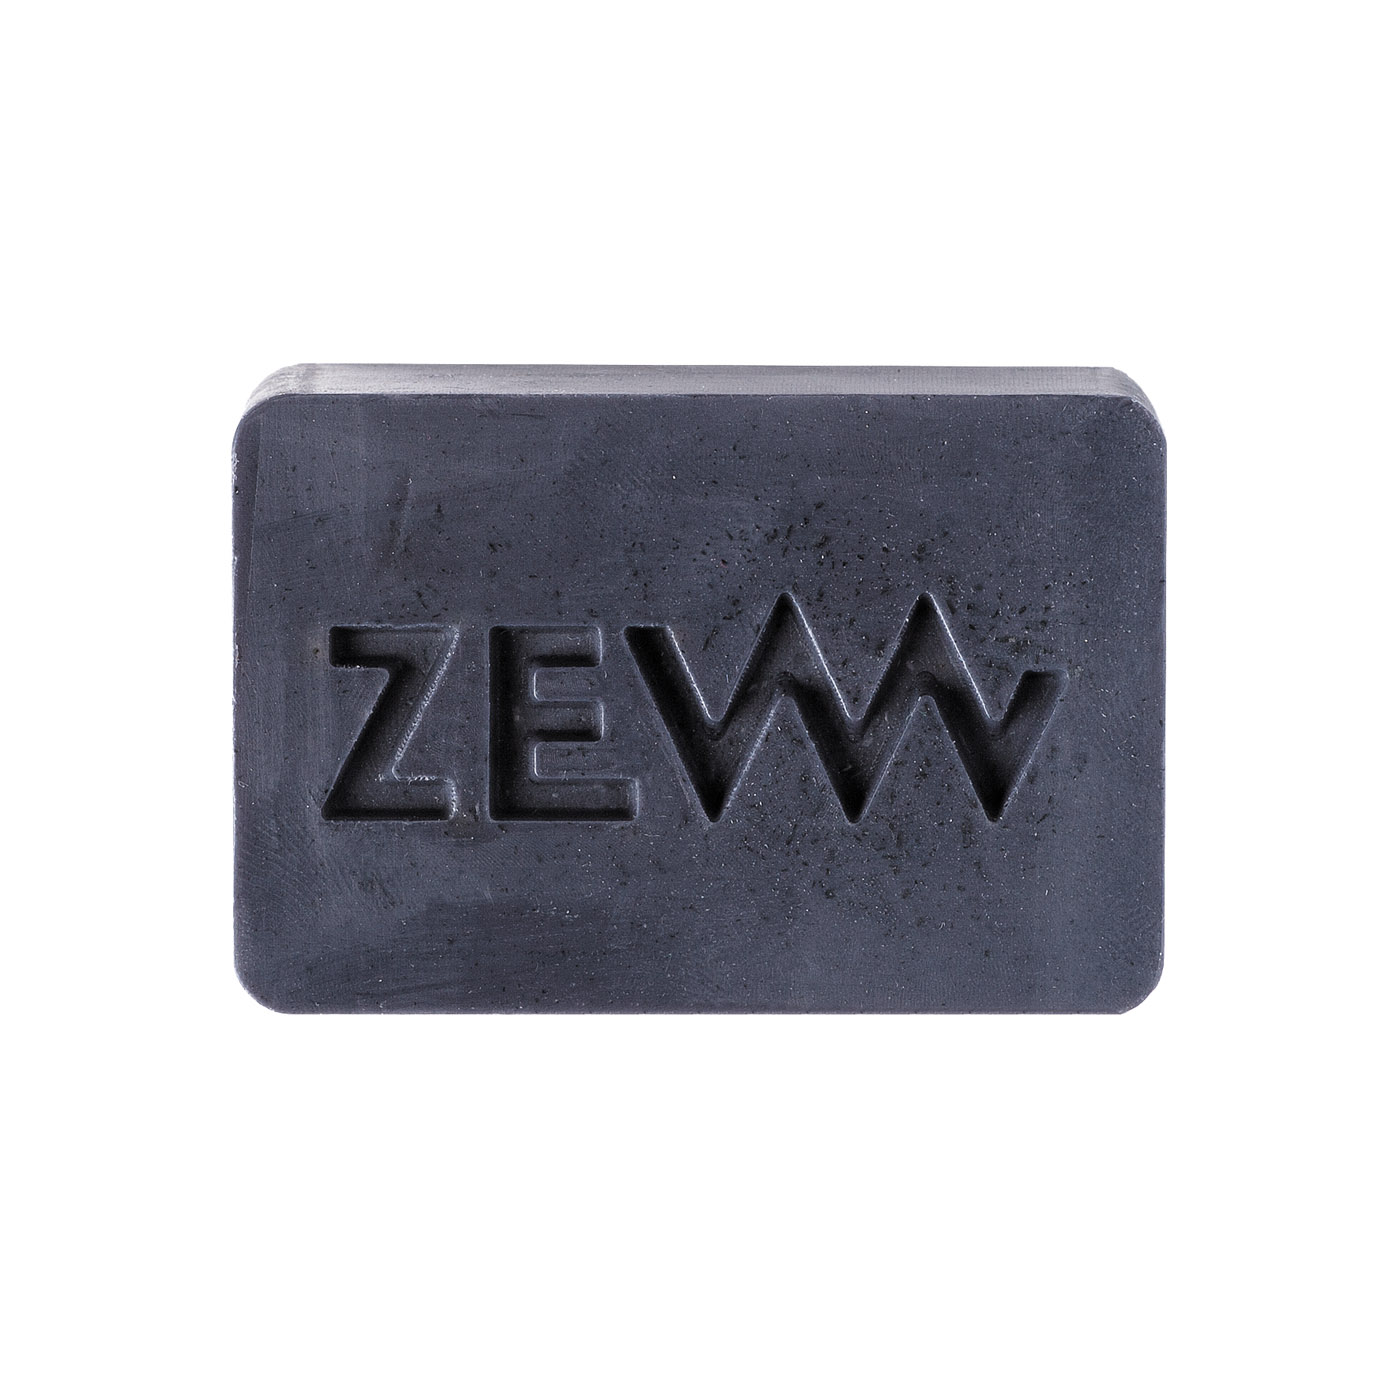 ZEW for men Beard Soap - mydlo na bradu s dreveným uhlím, 85 ml + vrecko M